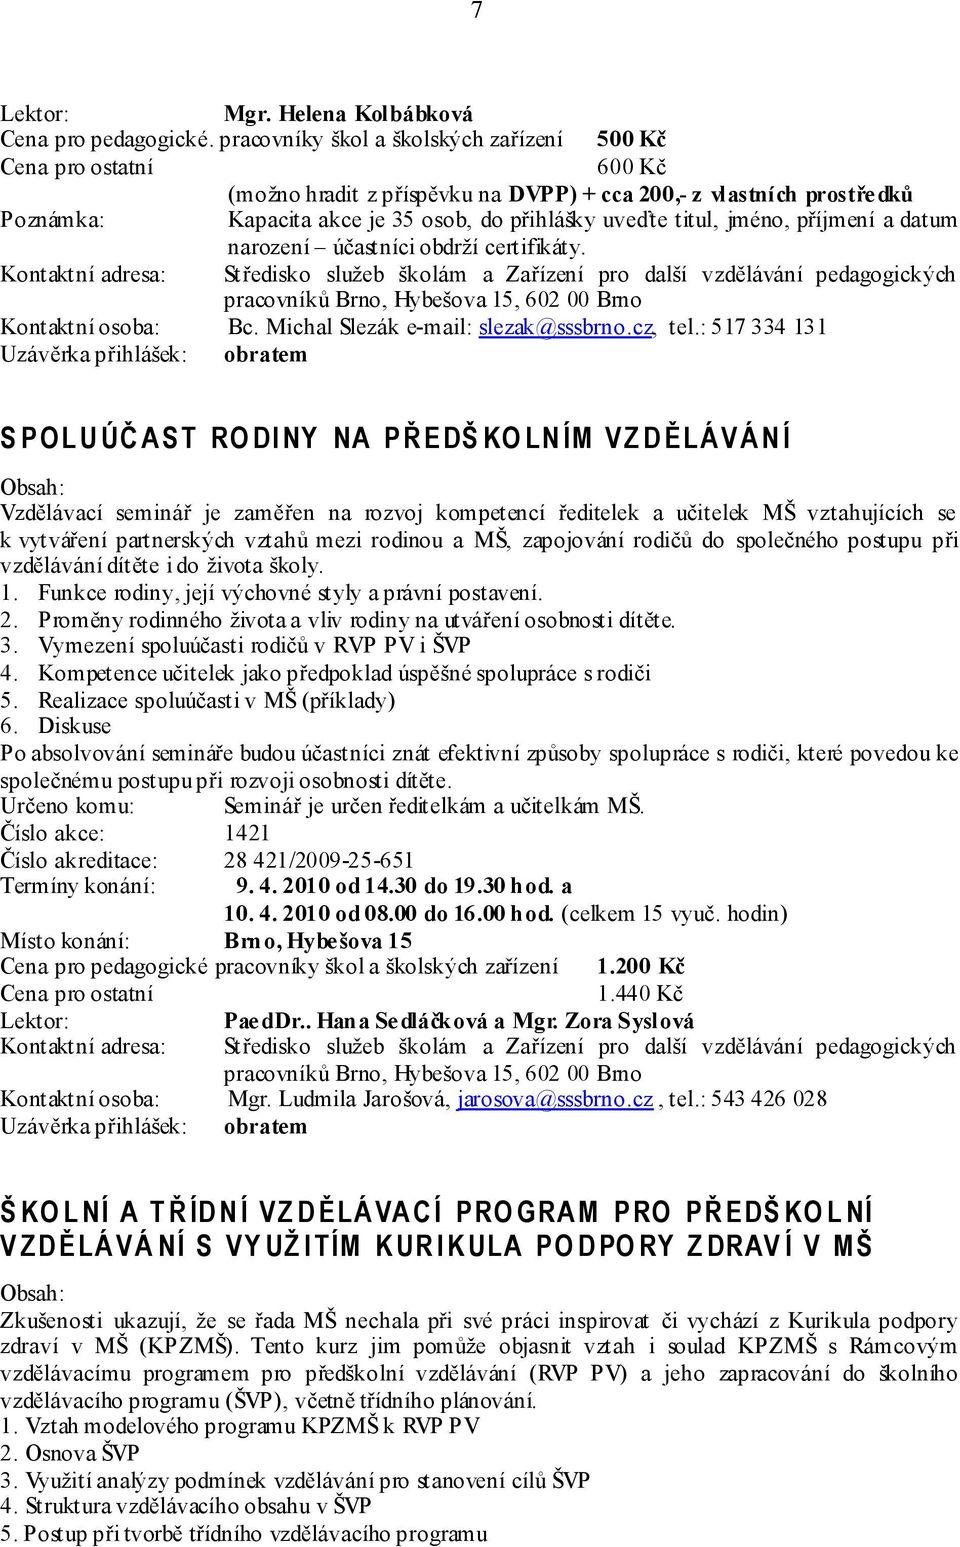 narození účastníci obdrží certifikáty. Kontaktní osoba: Bc. Michal Slezák e-mail: slezak@sssbrno.cz, tel.